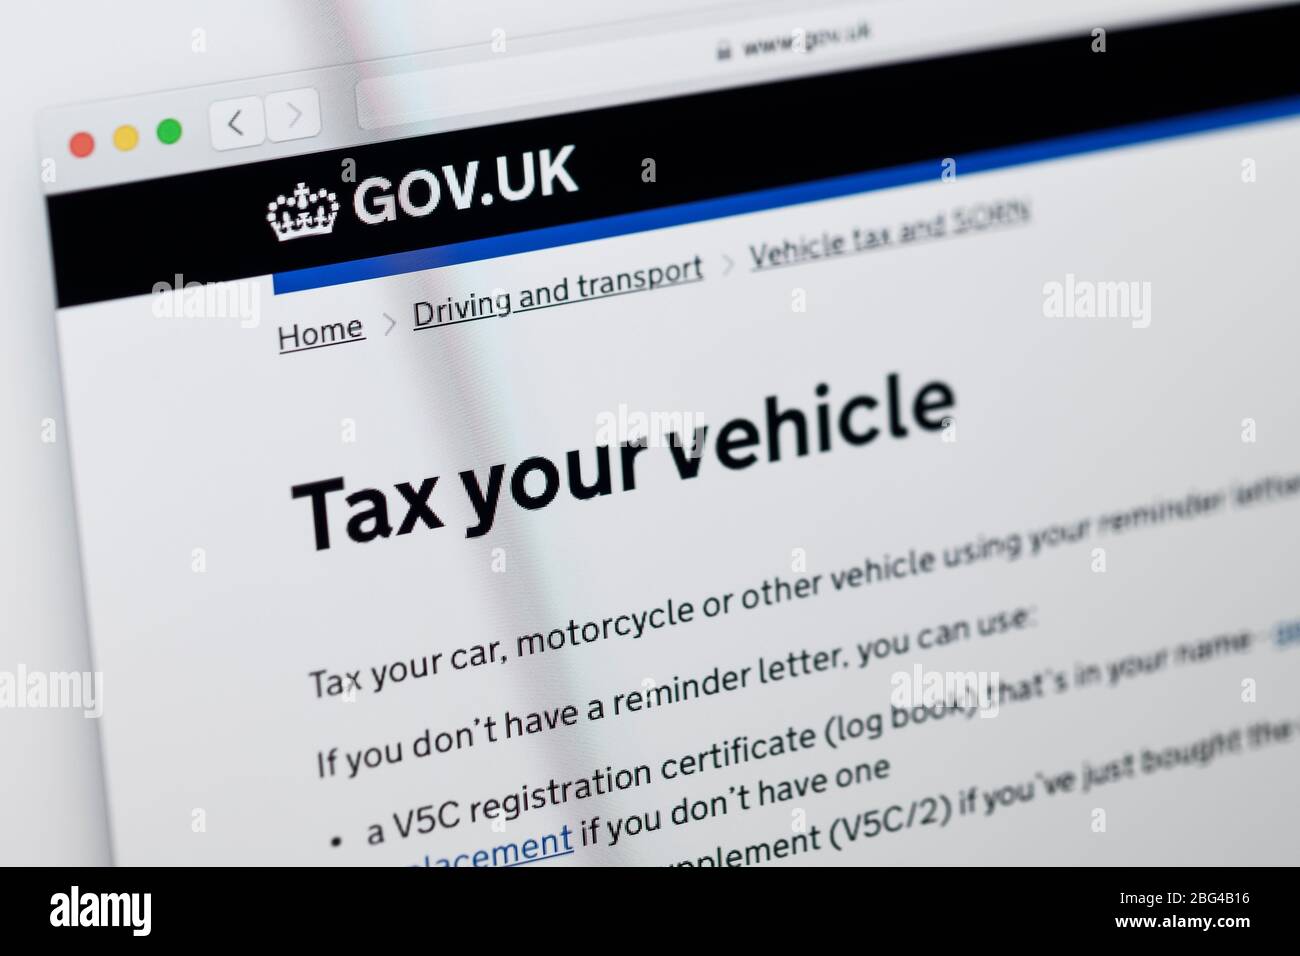 Detalle de la página principal del sitio web del gobierno británico que muestra información para hacer impuestos a su vehículo Foto de stock